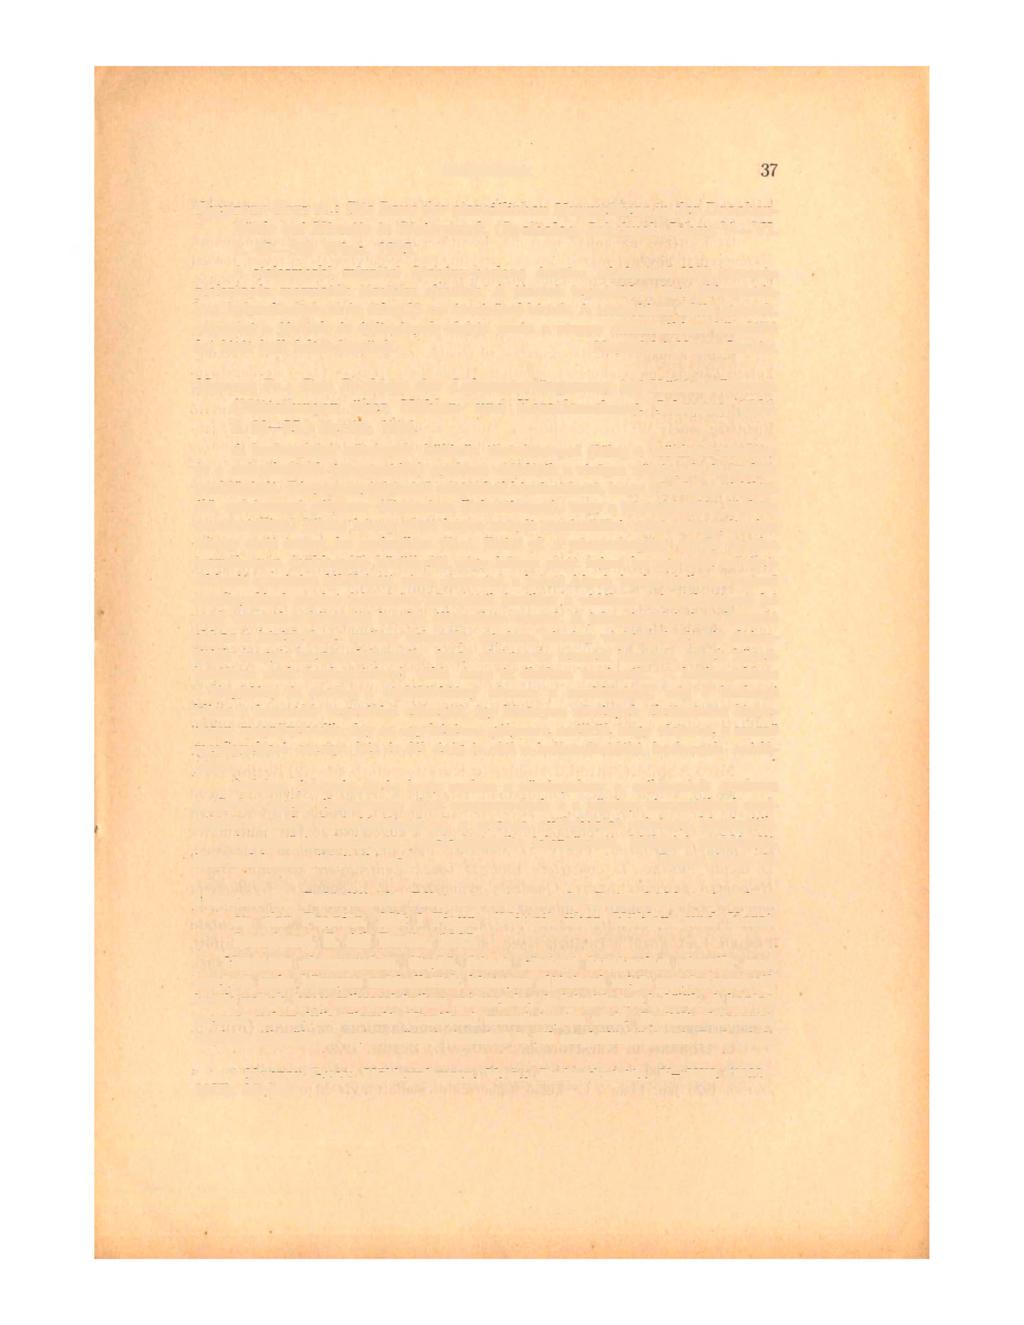 37 ISMERTETÉSEK BACHOFEN-ECHT A.: Die Baue der eiszeitlichen Murmeltiere in der Drachenhöhle bei Mixnitz in Steiermark. (Speláolog. Jahrbuch. Jahrg. V VI. S. 49 50) Wien, 1925.